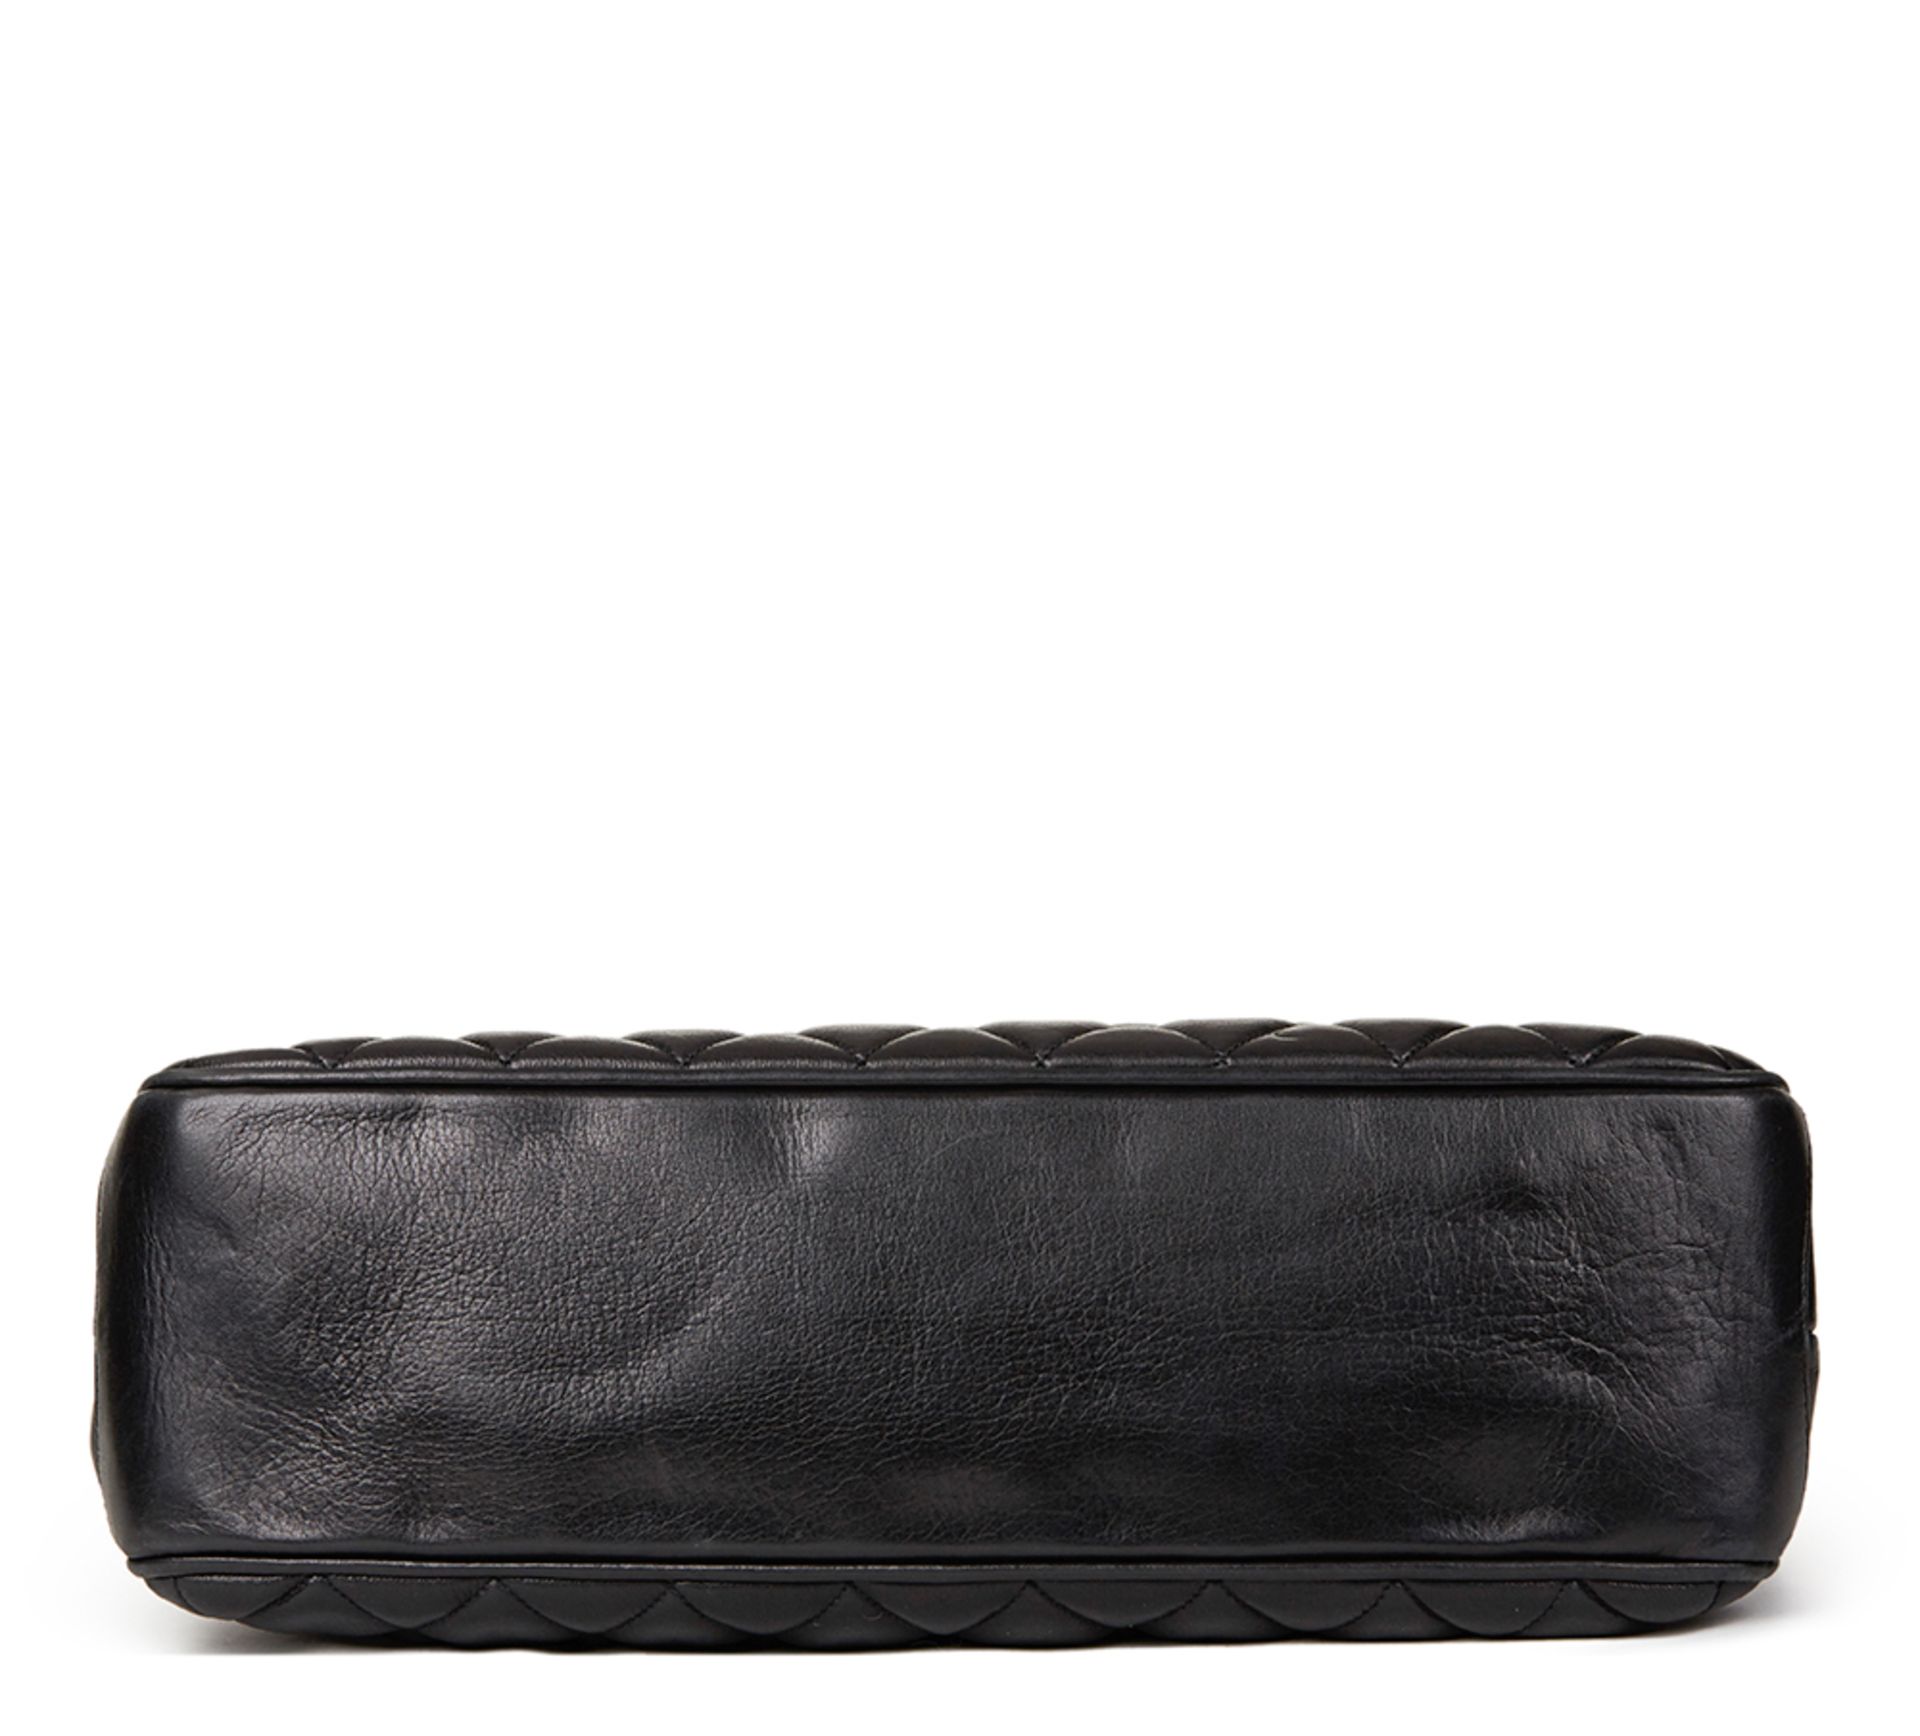 Black Quilted Lambskin Vintage Jumbo Timeless Charm Shoulder Bag - Image 5 of 10